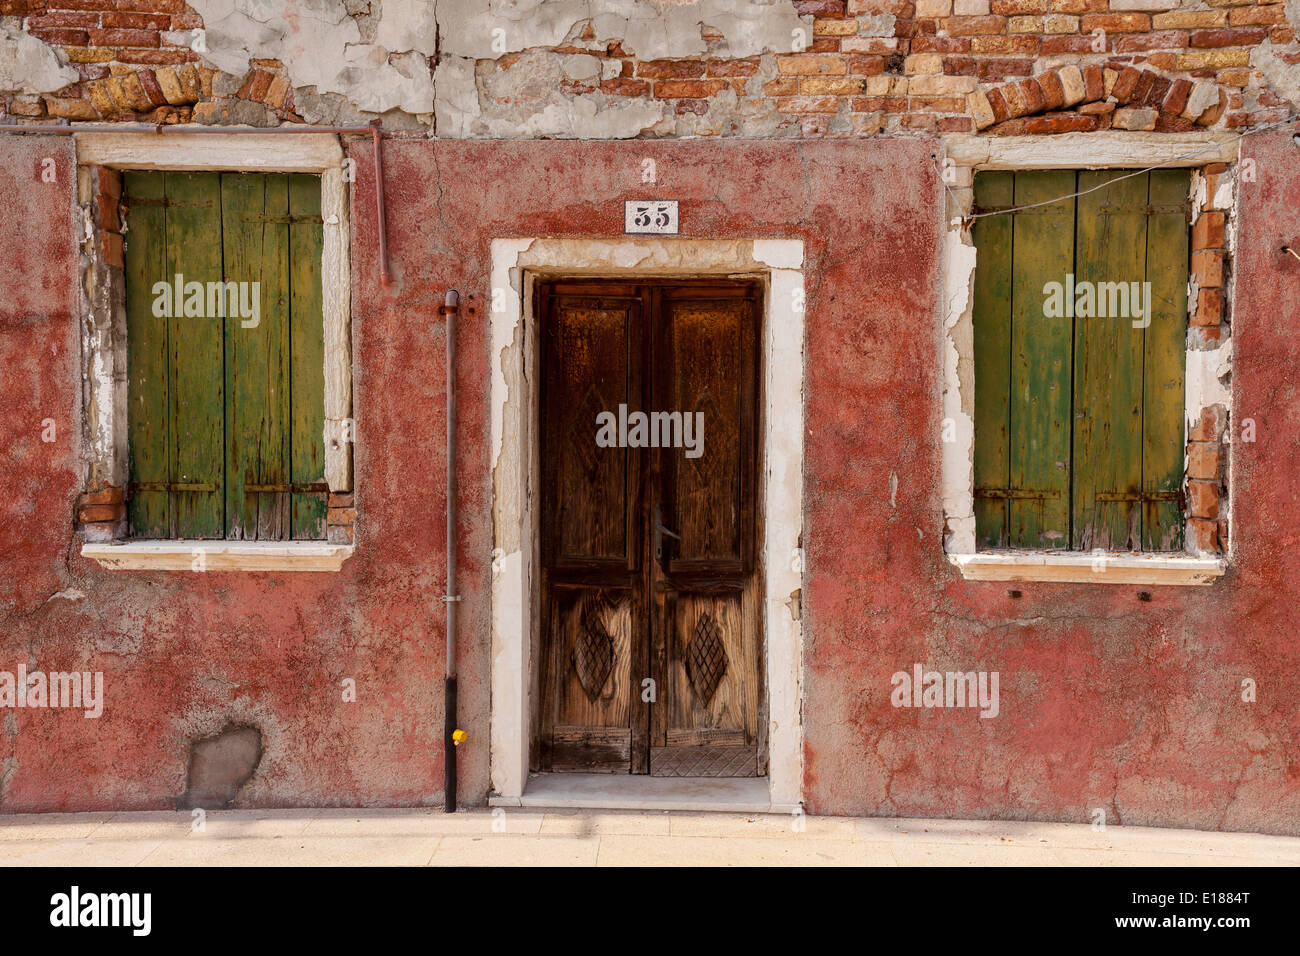 Casa colorida fachada en Burano. Foto de stock